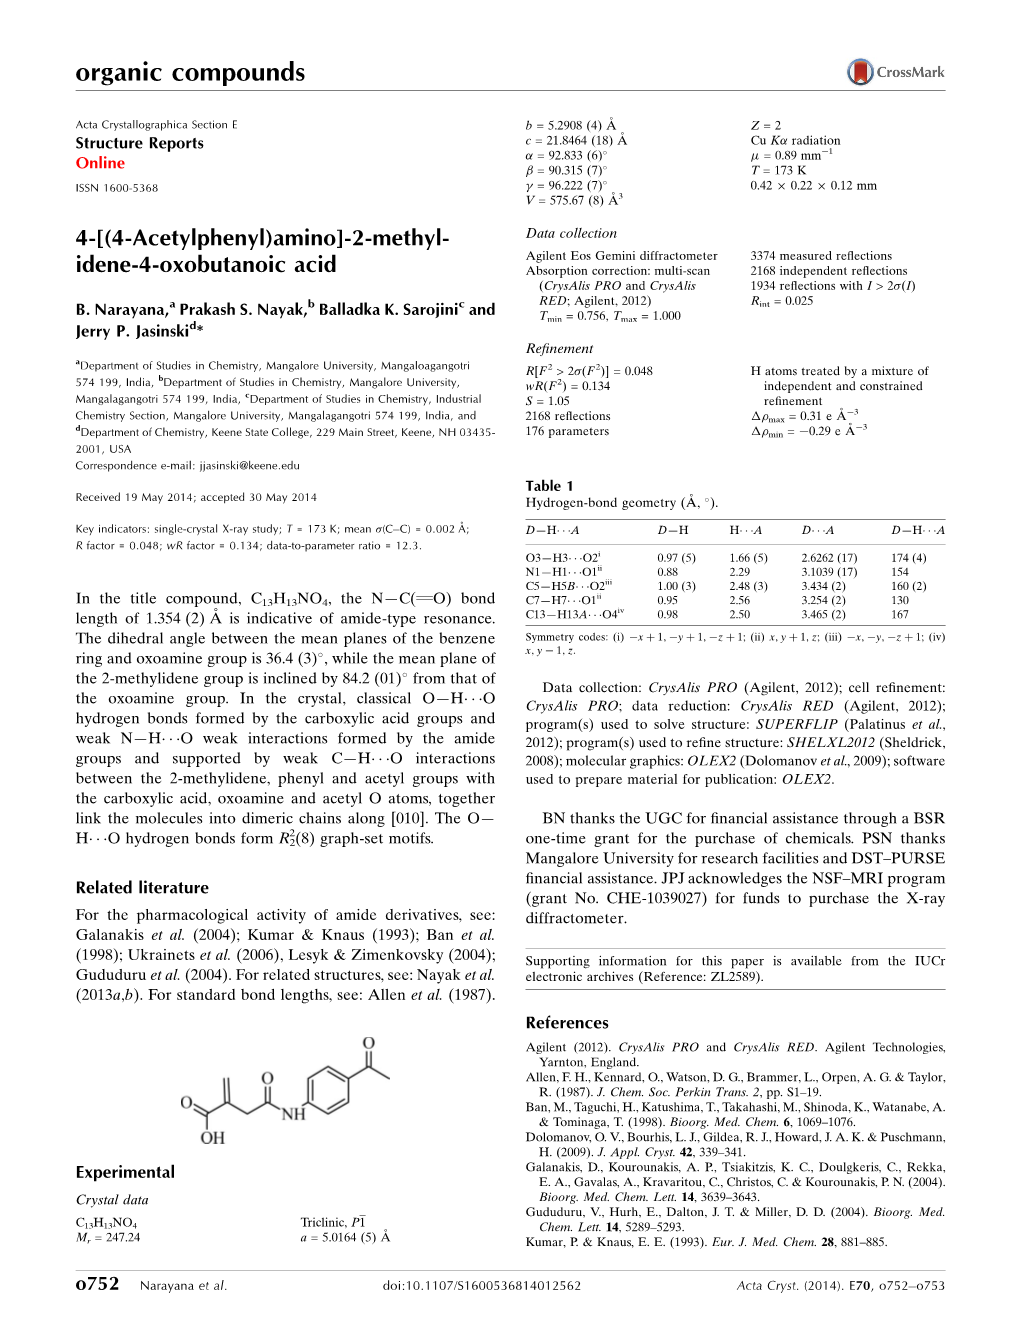 [(4-Acetylphenyl)Amino]-2-Methylidene-4-Oxobutanoic Acid